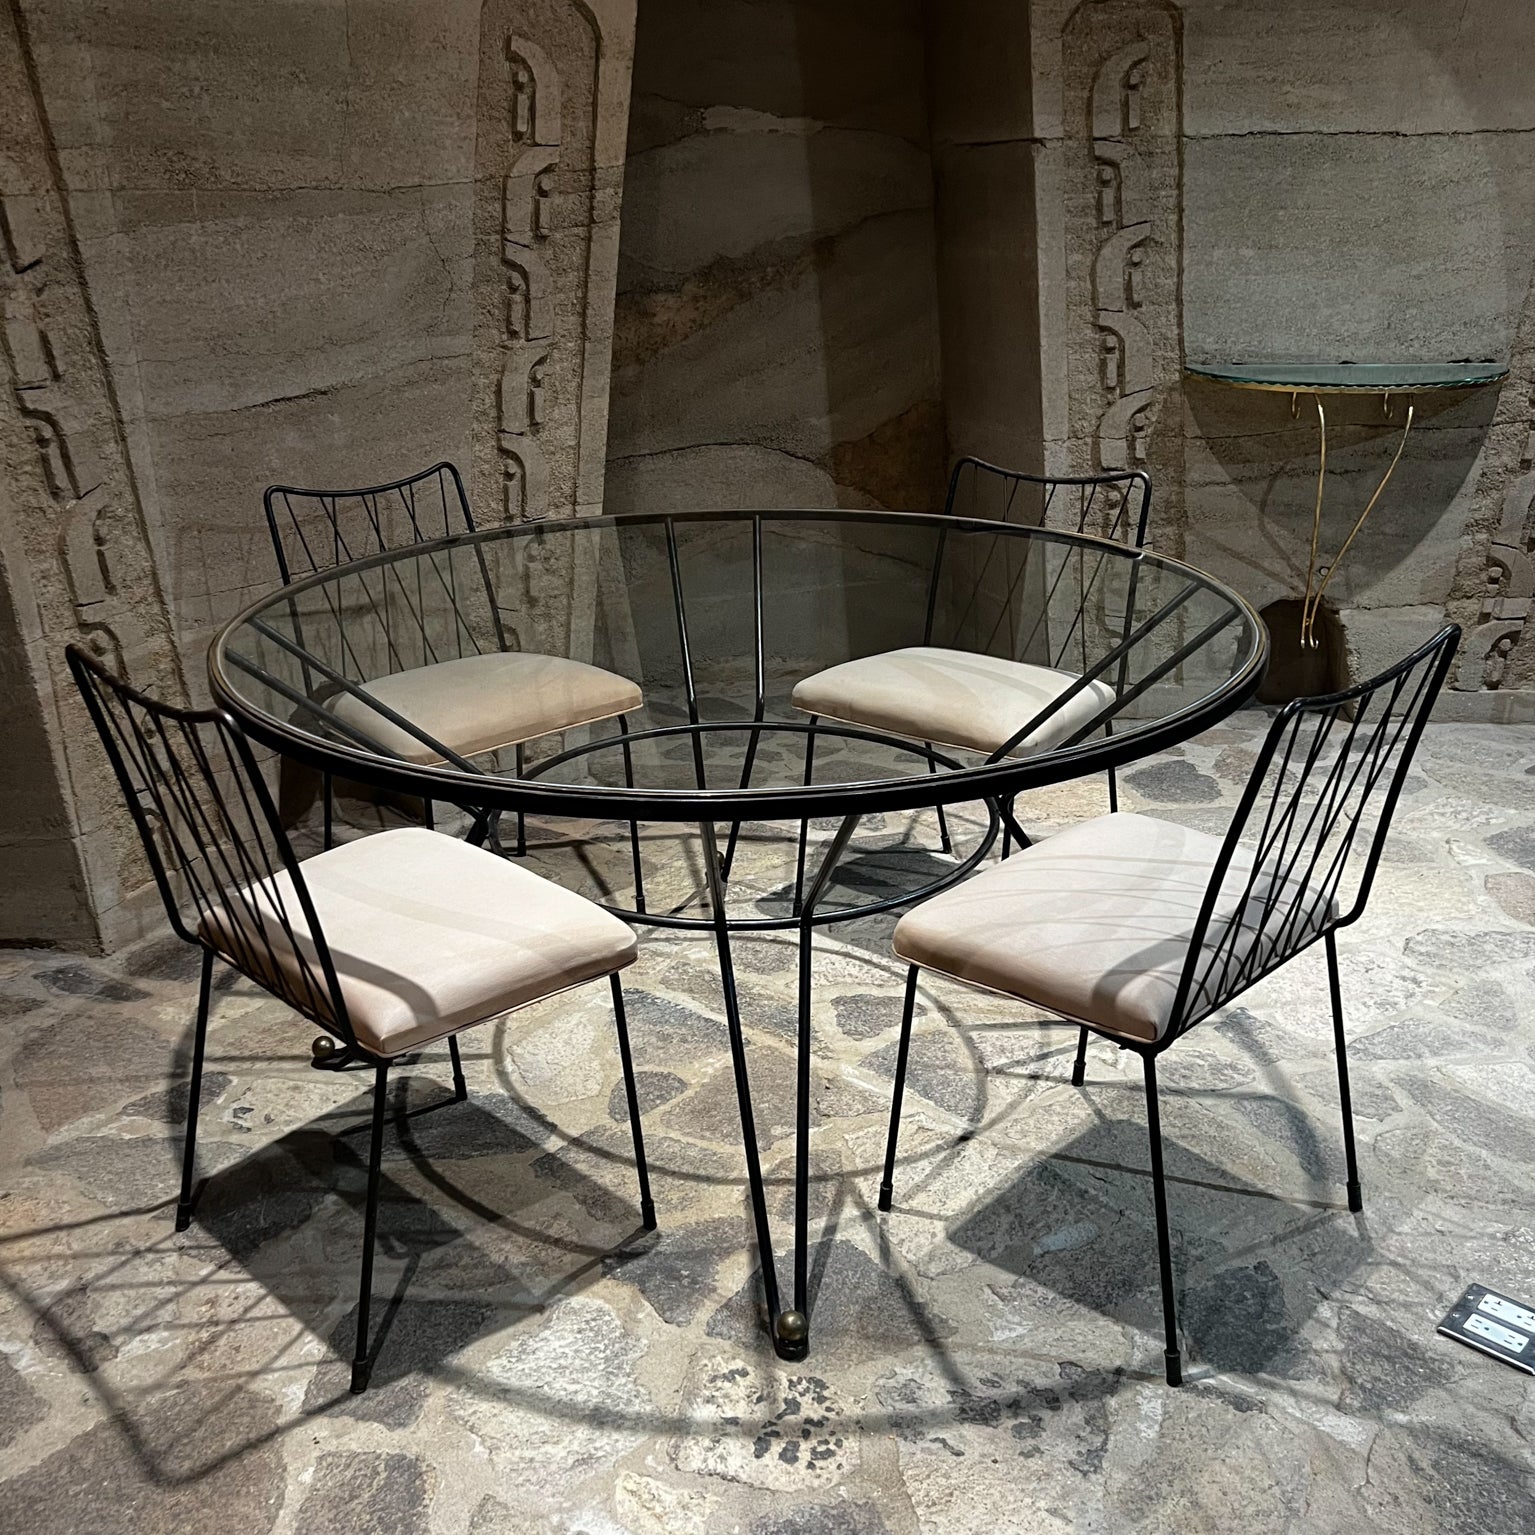 1950er Jahre Mexico City Französisch inspiriert Esstisch Set
Geschmiedetes Eisen und Bronze. Neue Glasplatte 
Tisch 30 x 59 Zoll Durchmesser
Das Set enthält 6 Esszimmerstühle.
33,25 hoch x 20 t x 20,5 b Sitz 19,5 h Stühle
Kein Label 
Esstisch 4